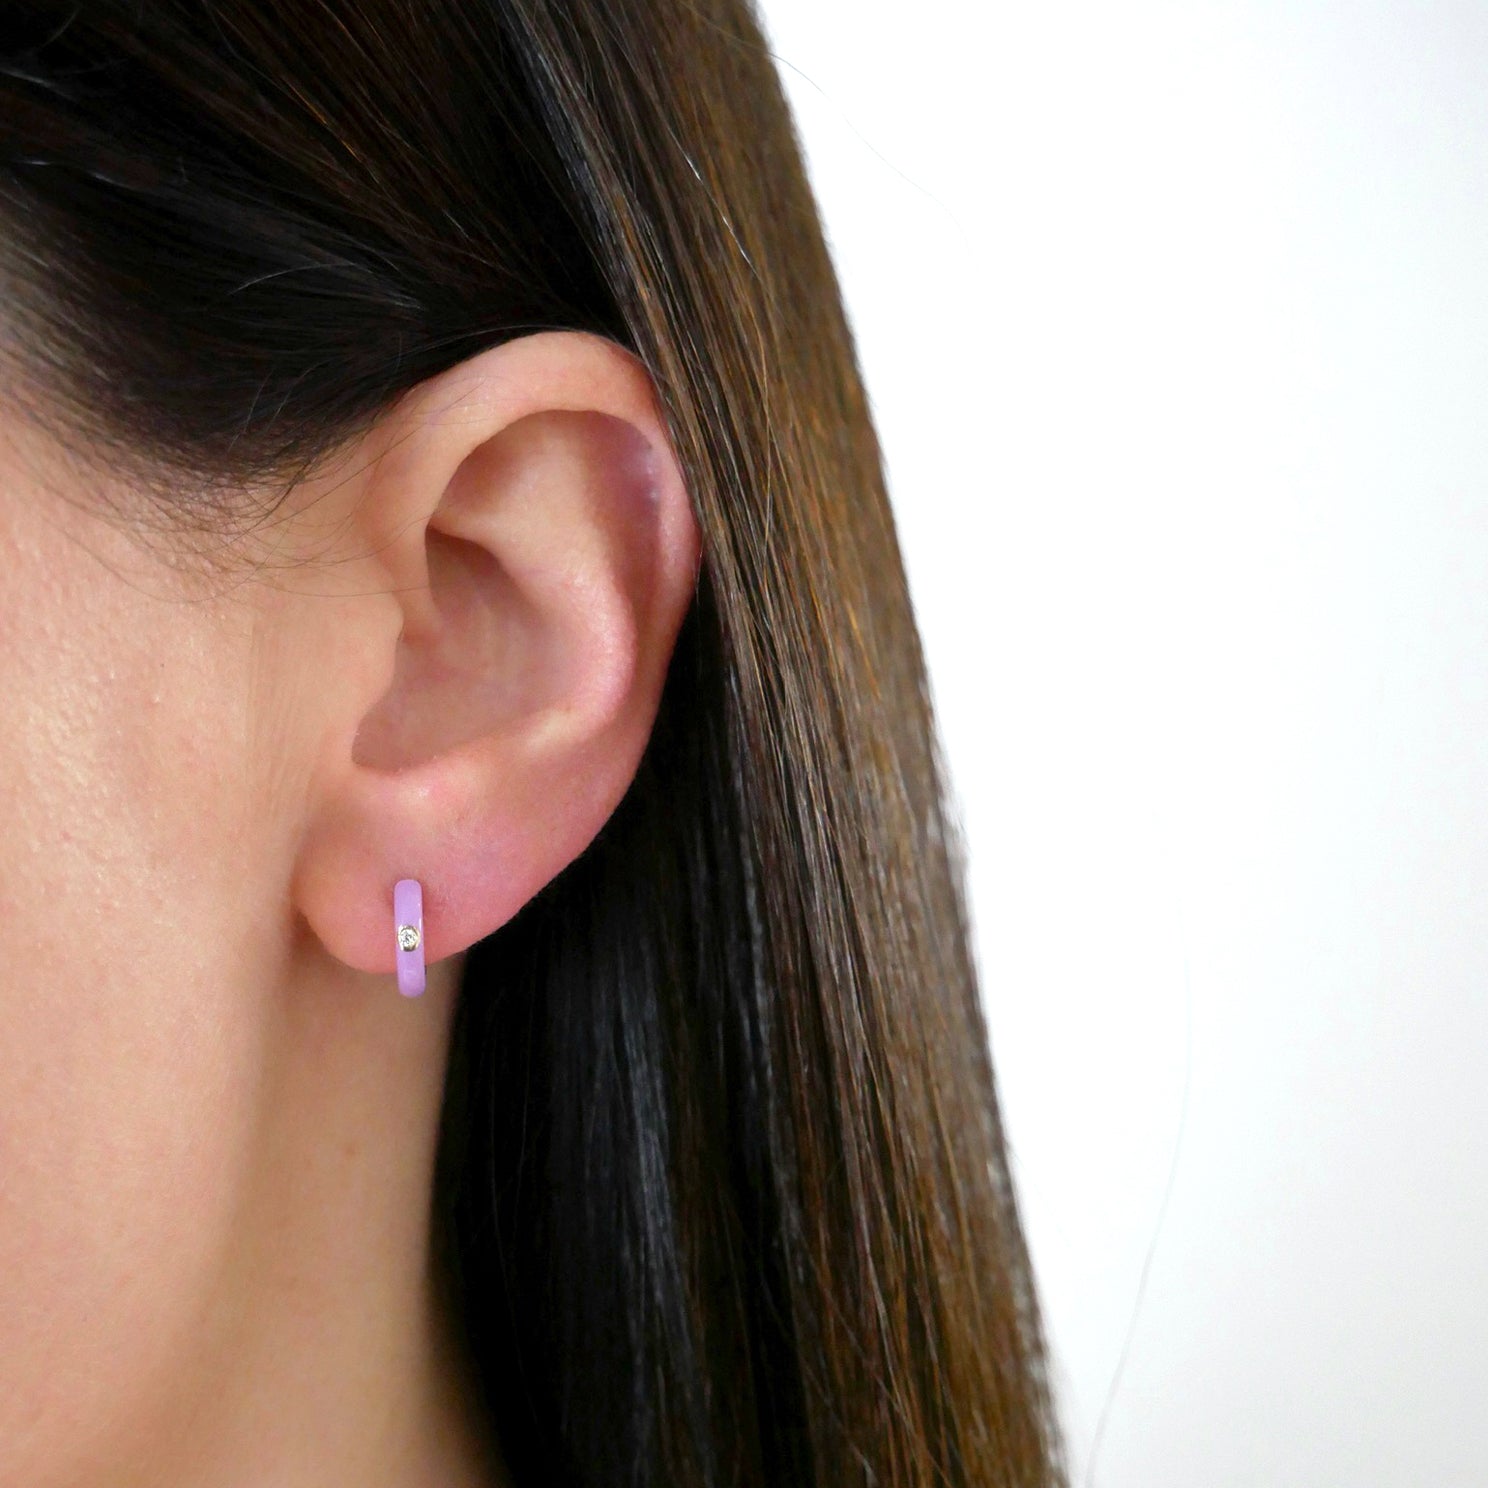 Diamond Lavender Enamel Huggie Earring in 14k yellow gold styled on ear lobe of model